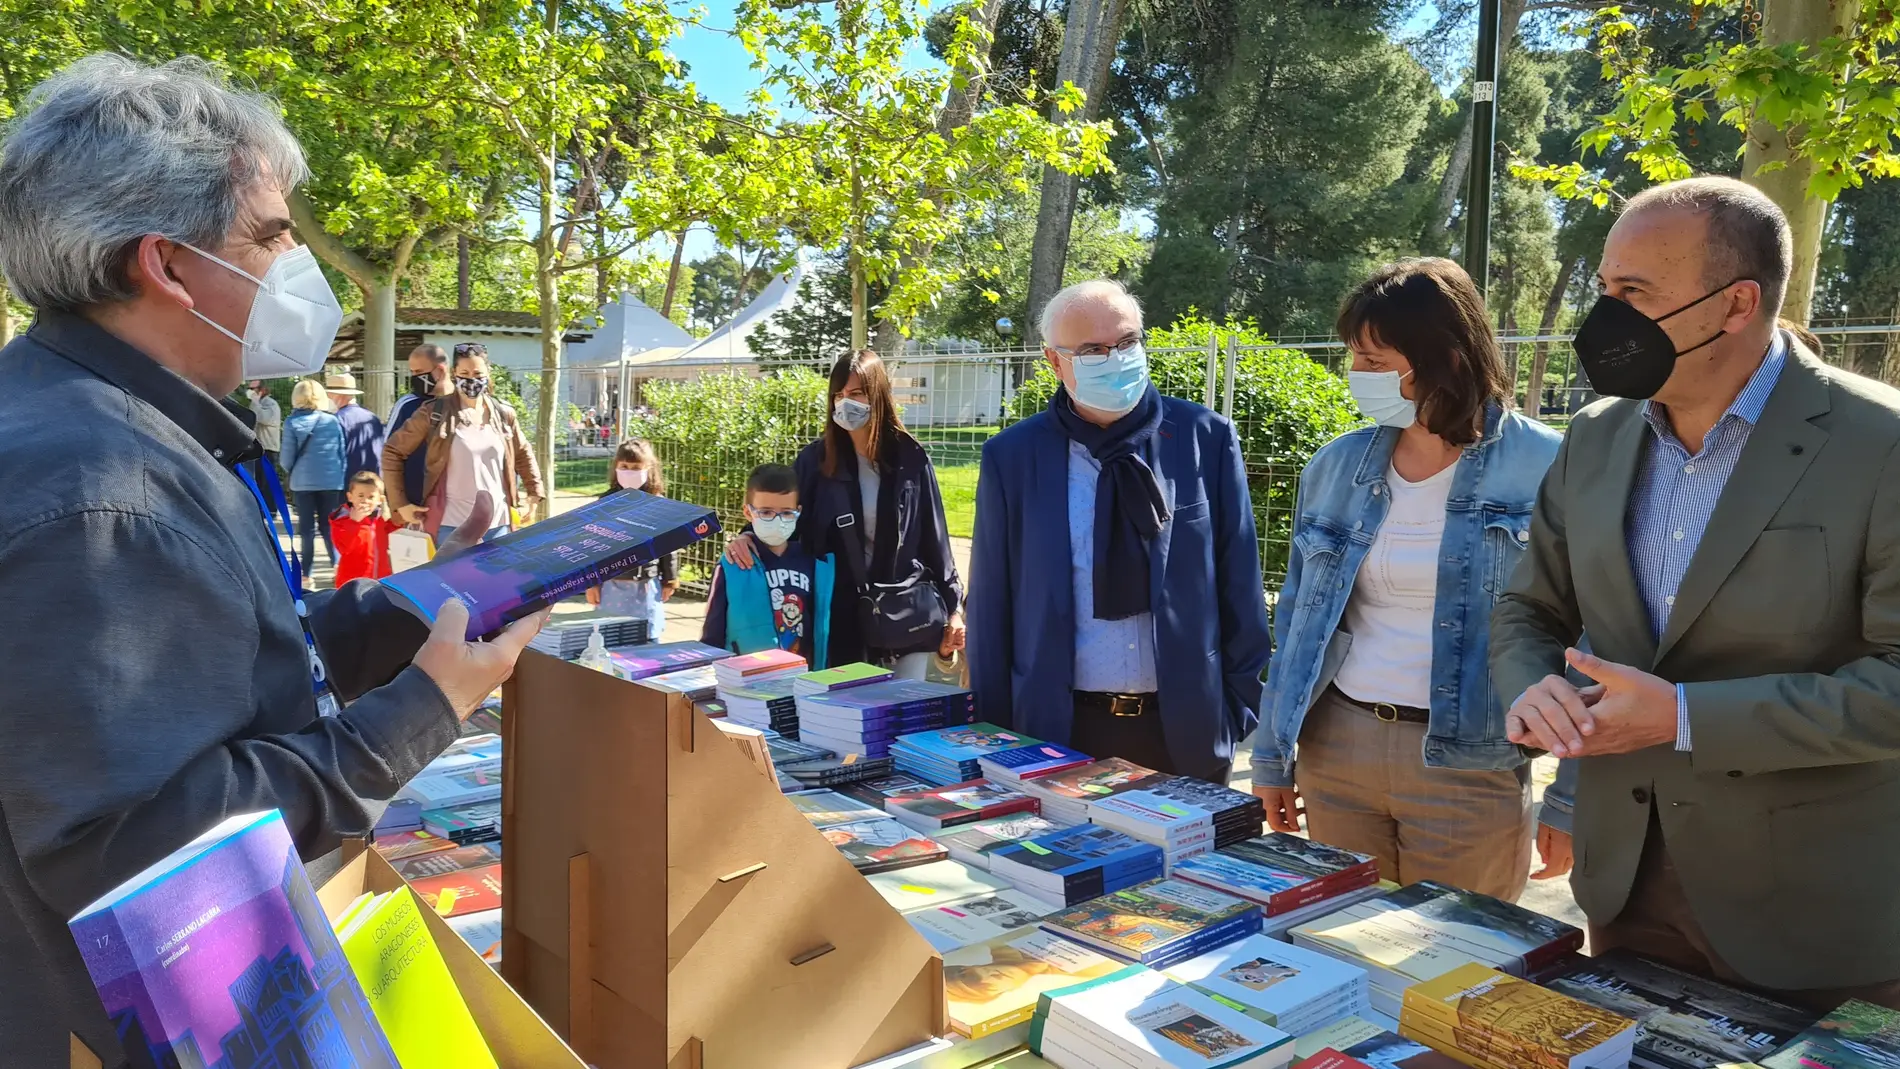 La Feria del Libro de Zaragoza se ha trasladado al parque Grande José Antonio Labordeta